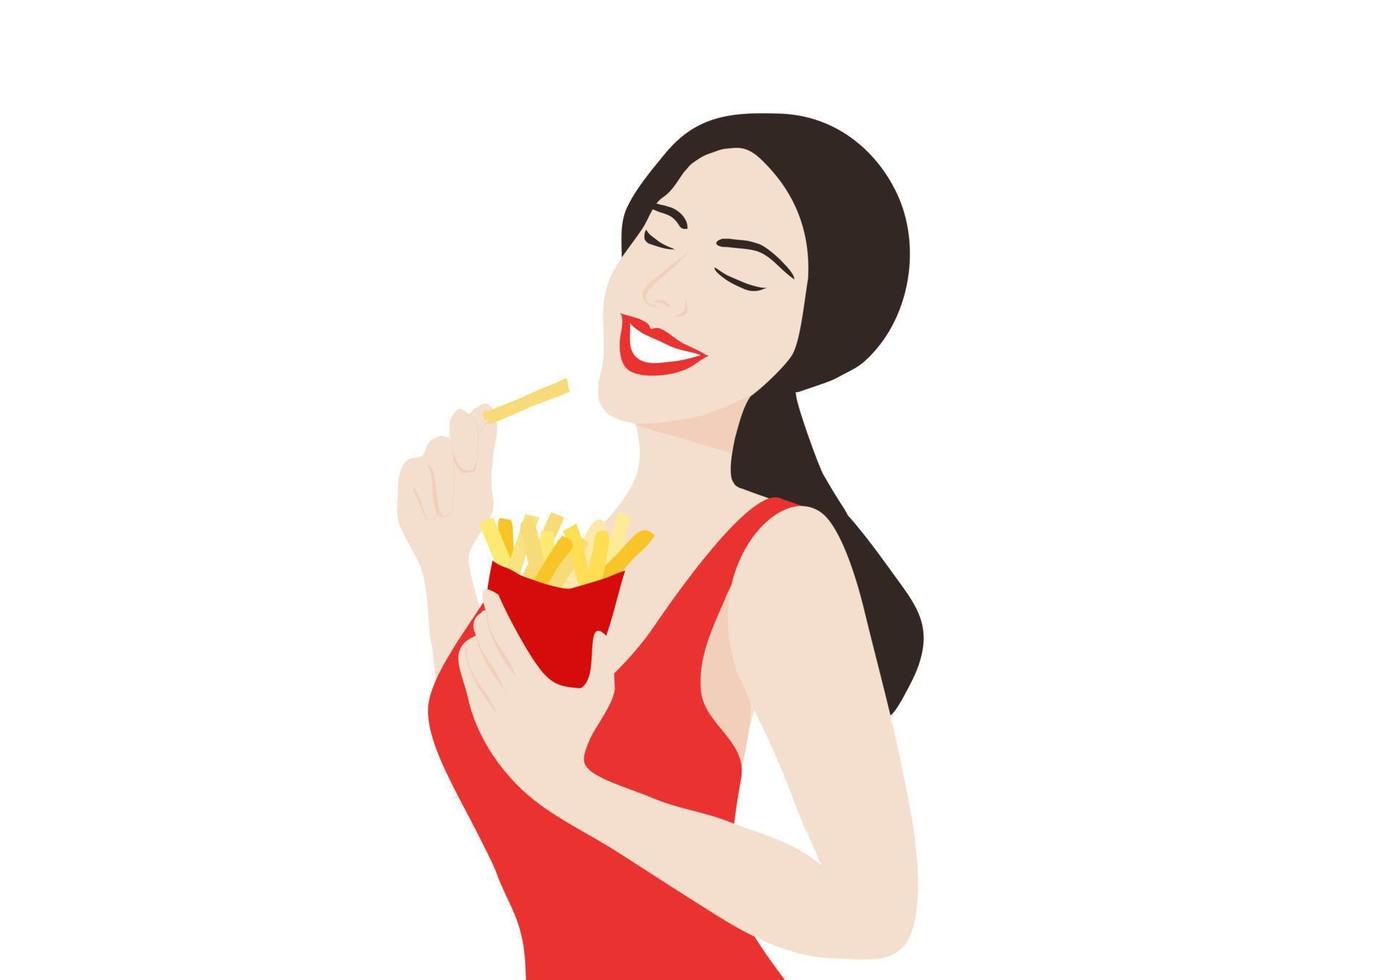 vrouw die frietjes eet geïsoleerde vectorillustratie vector